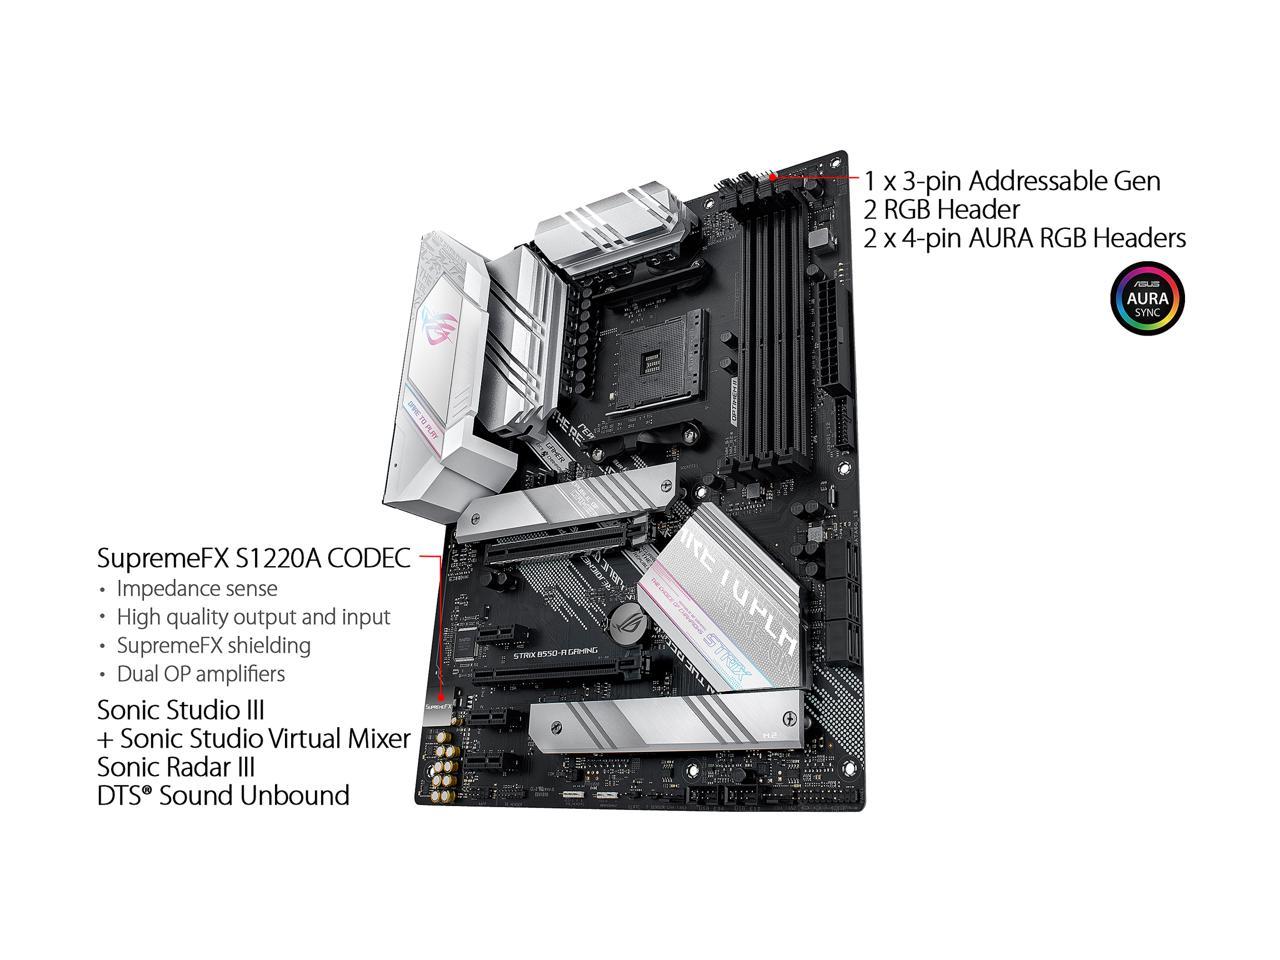 ASUS ROG STRIX B550-A GAMING | eBay Motherboard AMD ATX 192876826607 6Gb/s AM4 AMD B550 SATA